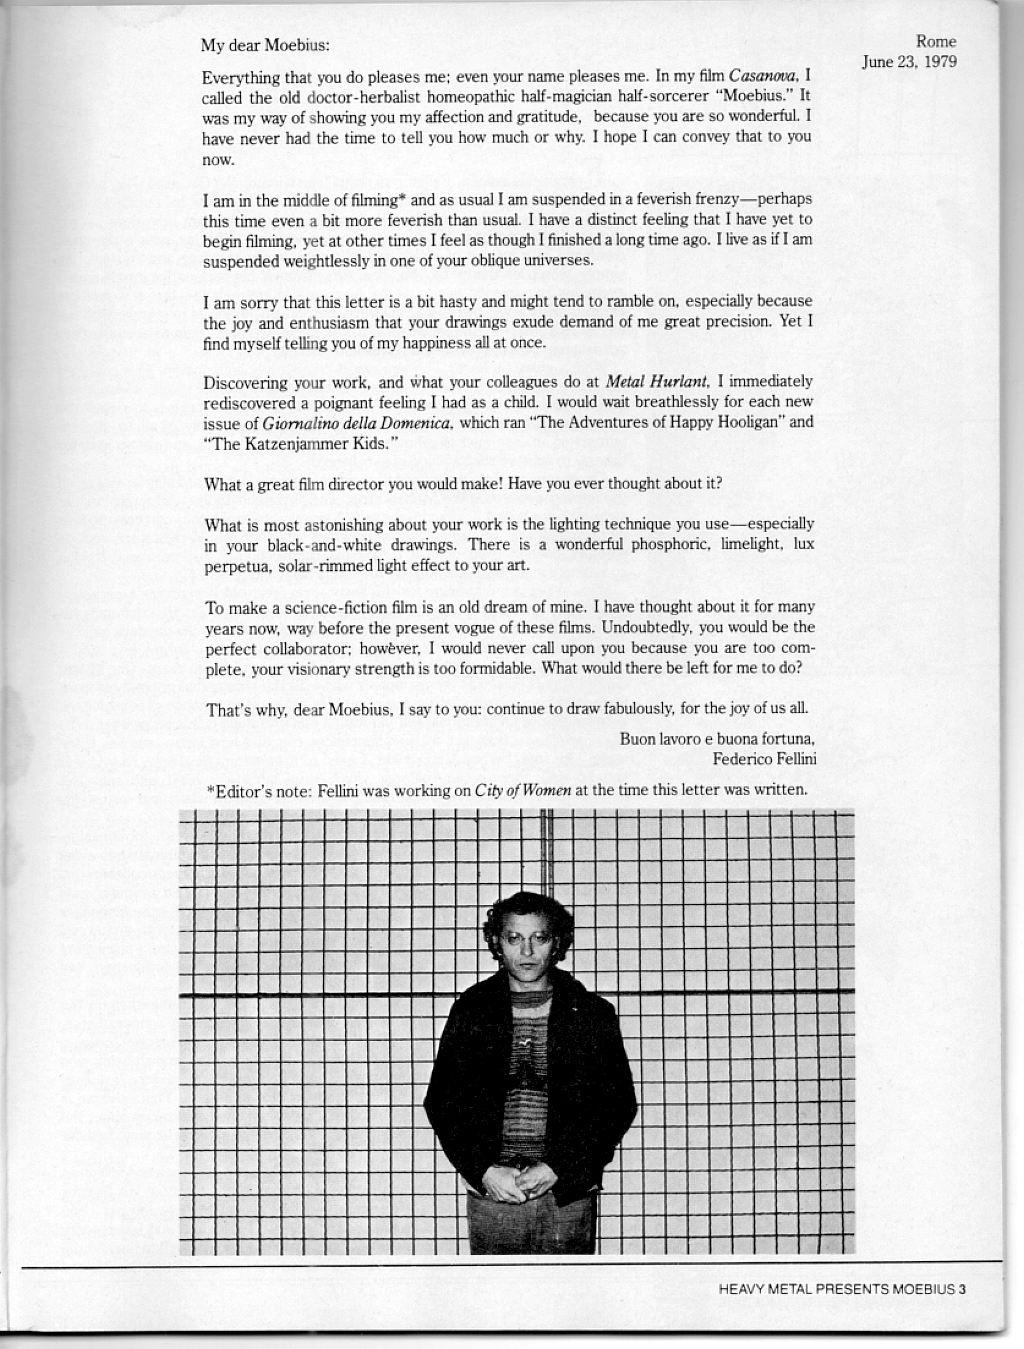 Pagina de introducción de Heavy metal Moebius de 1981 de Federico Fellini a Moebius